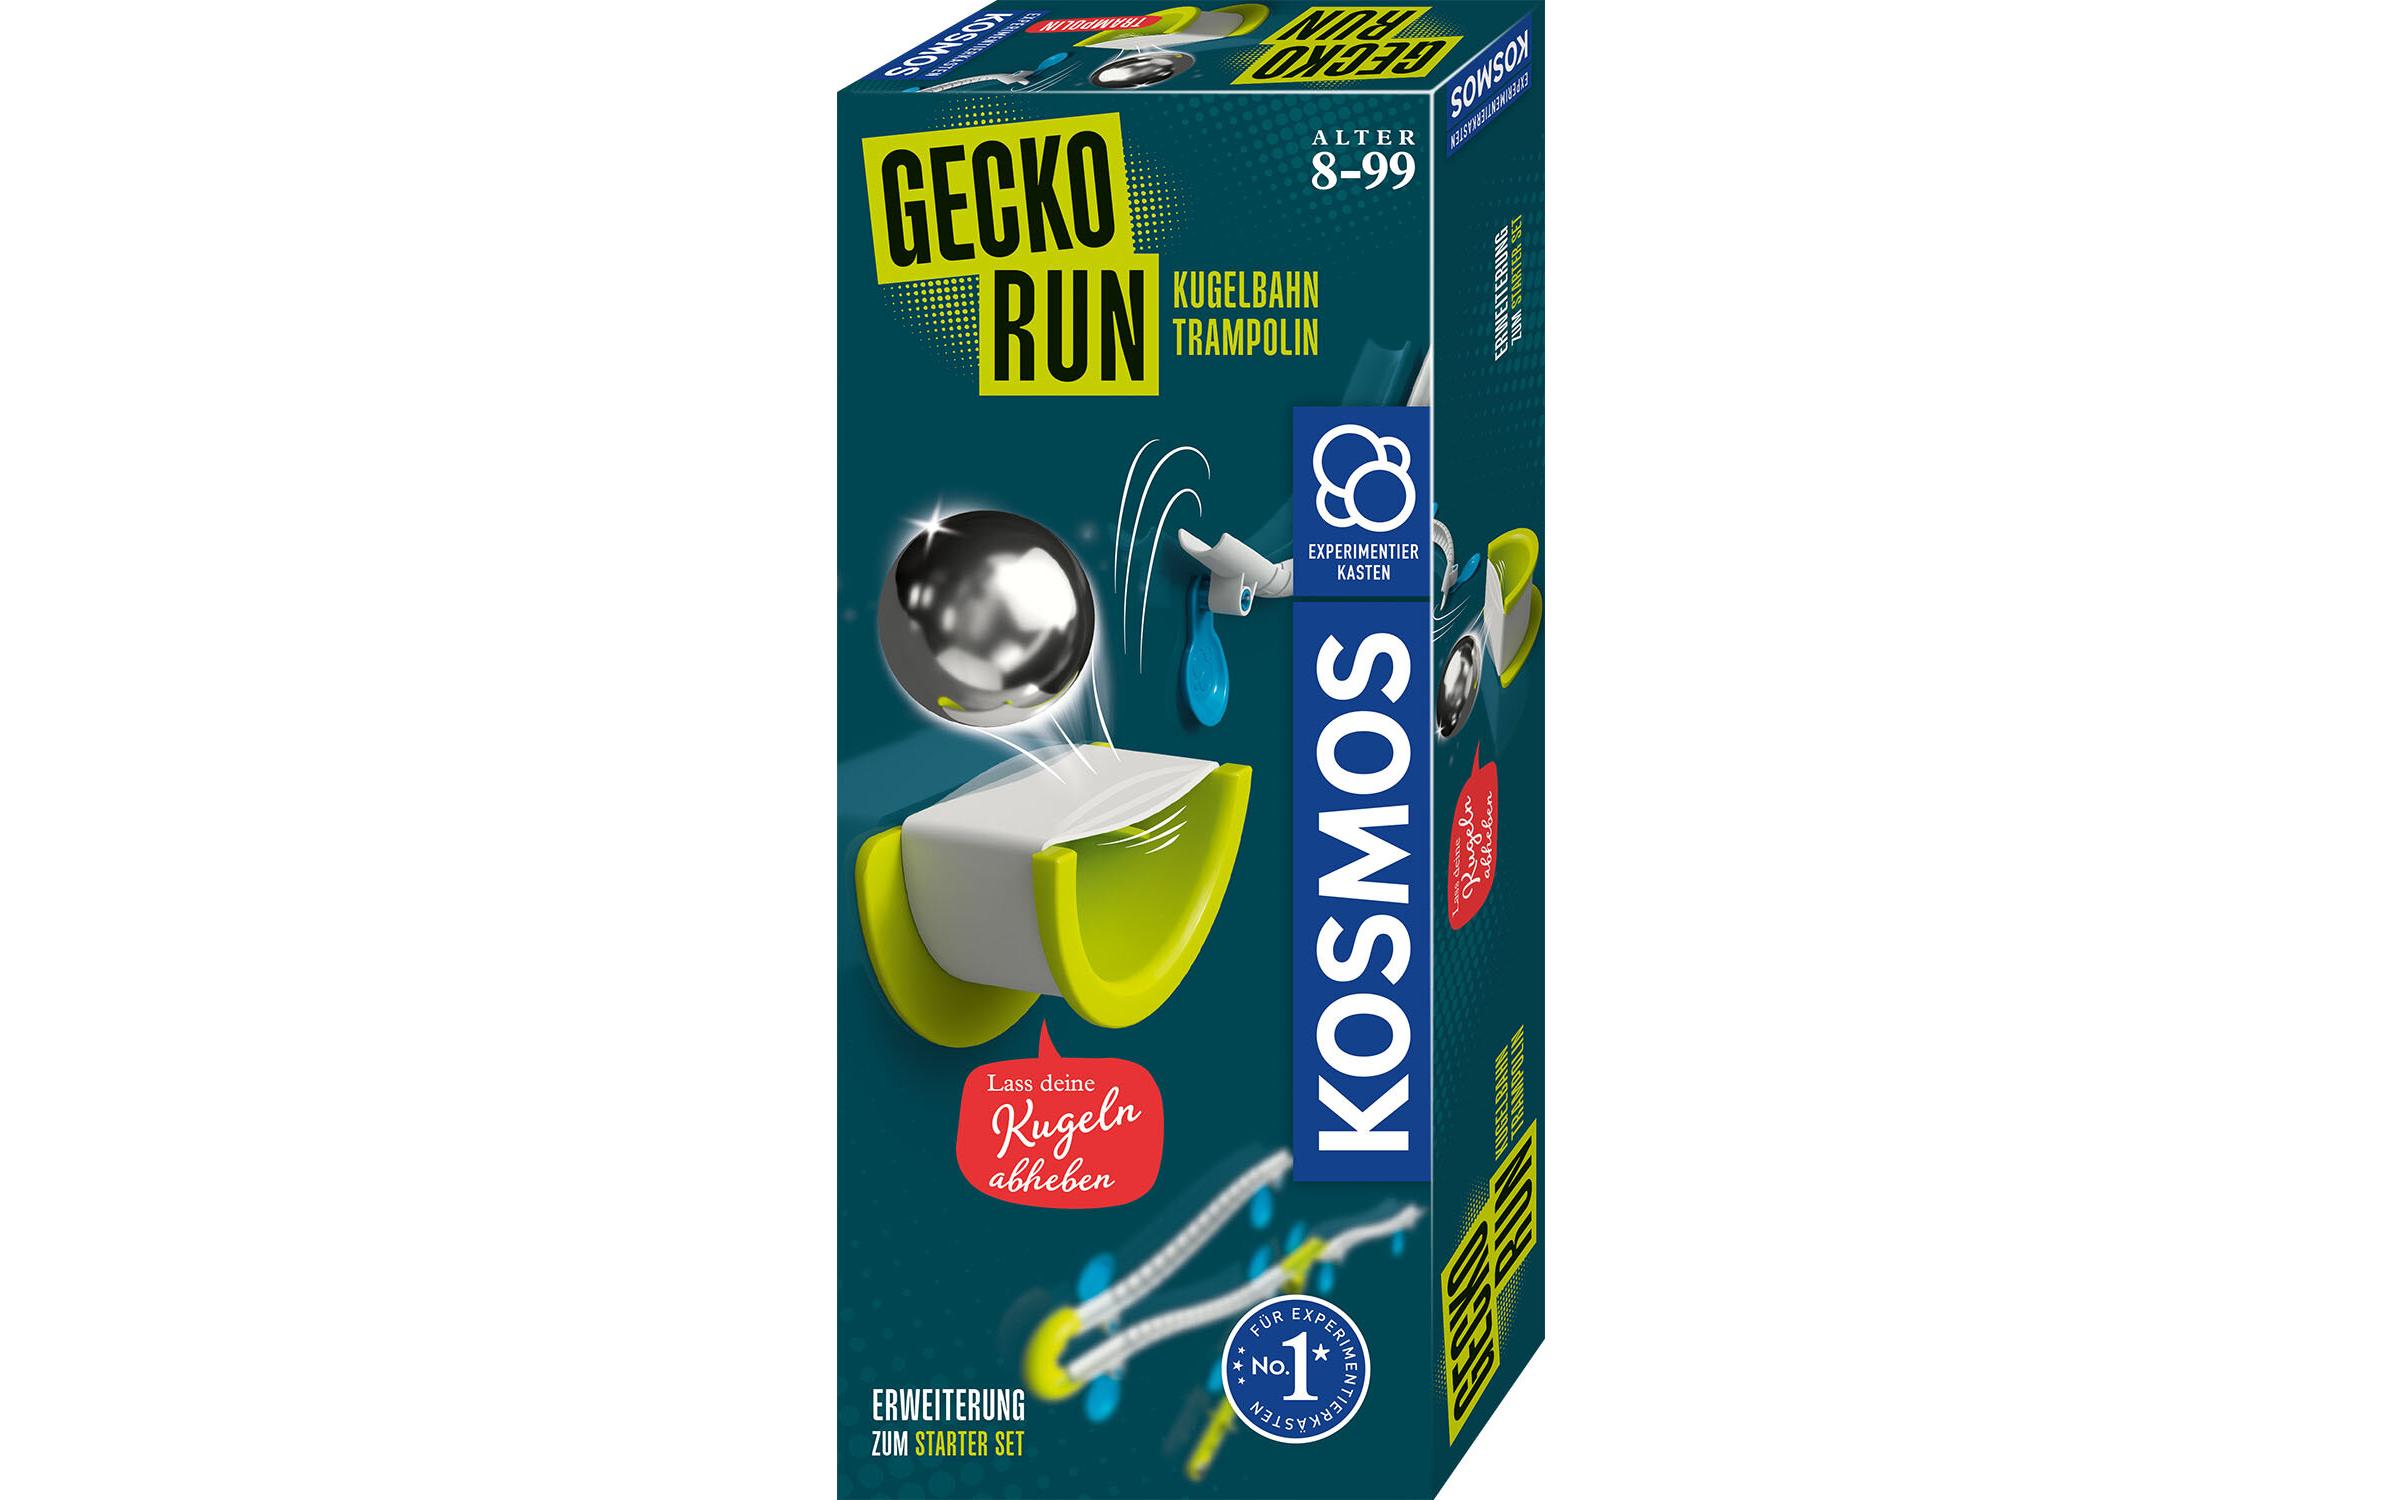 Kosmos Kugelbahn Zubehör Gecko Run – Trampoline-Expansion